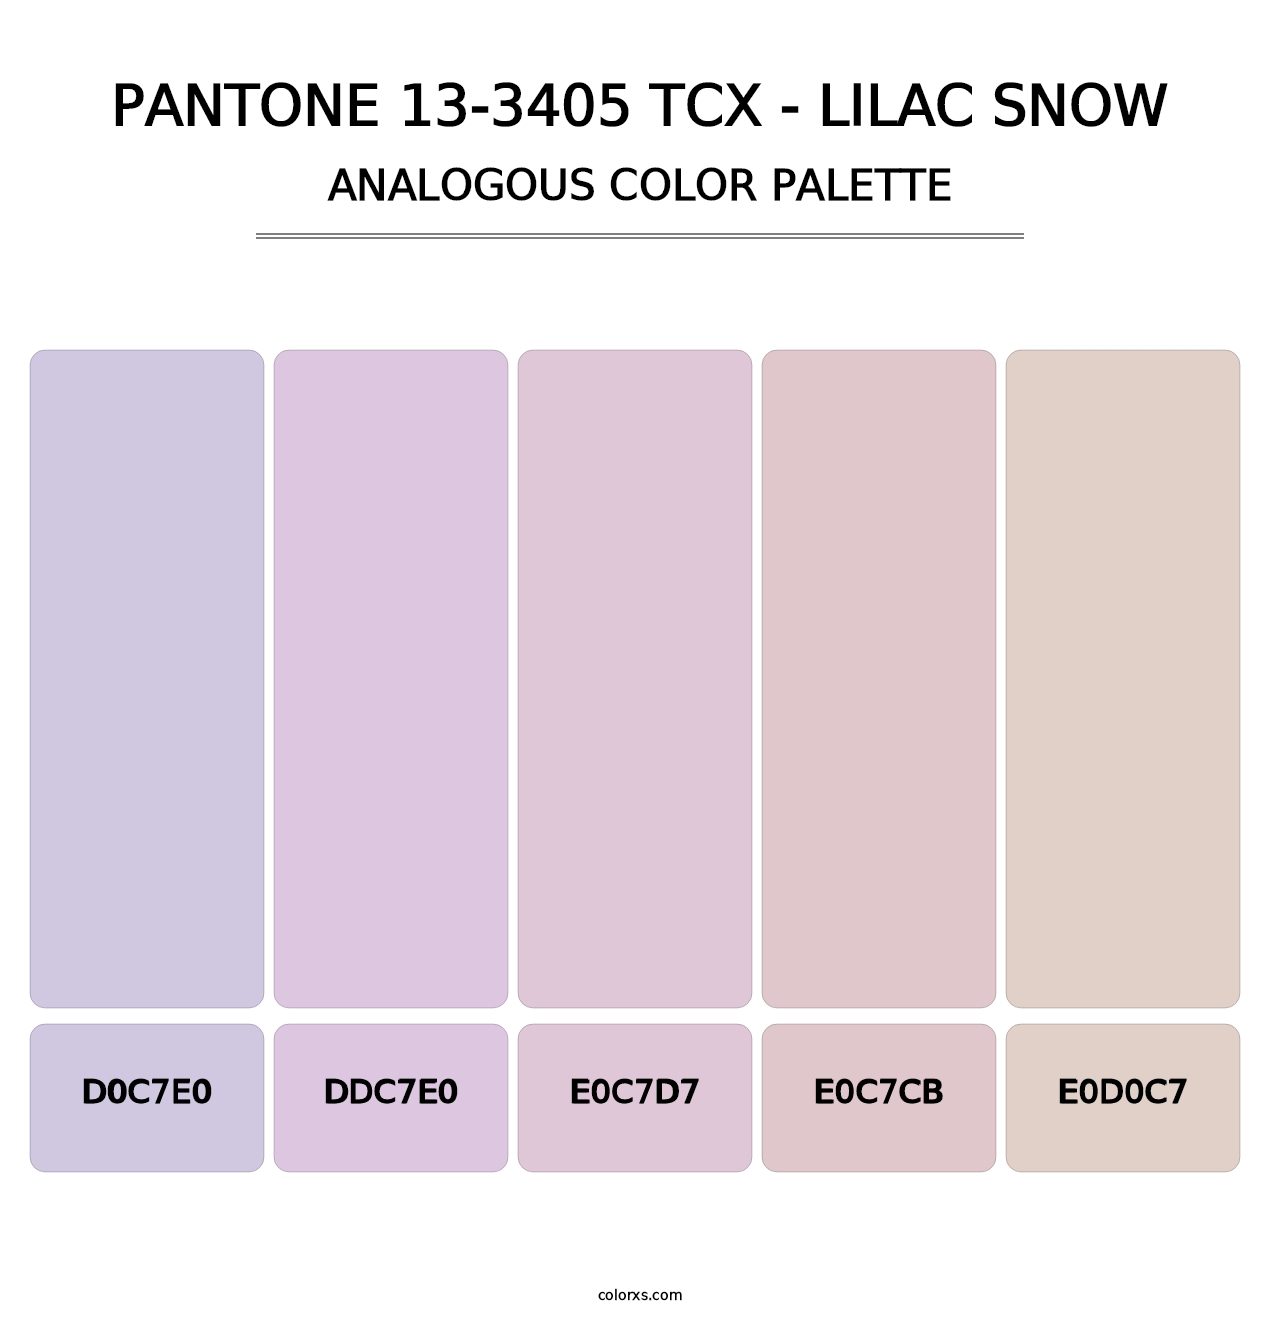 PANTONE 13-3405 TCX - Lilac Snow - Analogous Color Palette